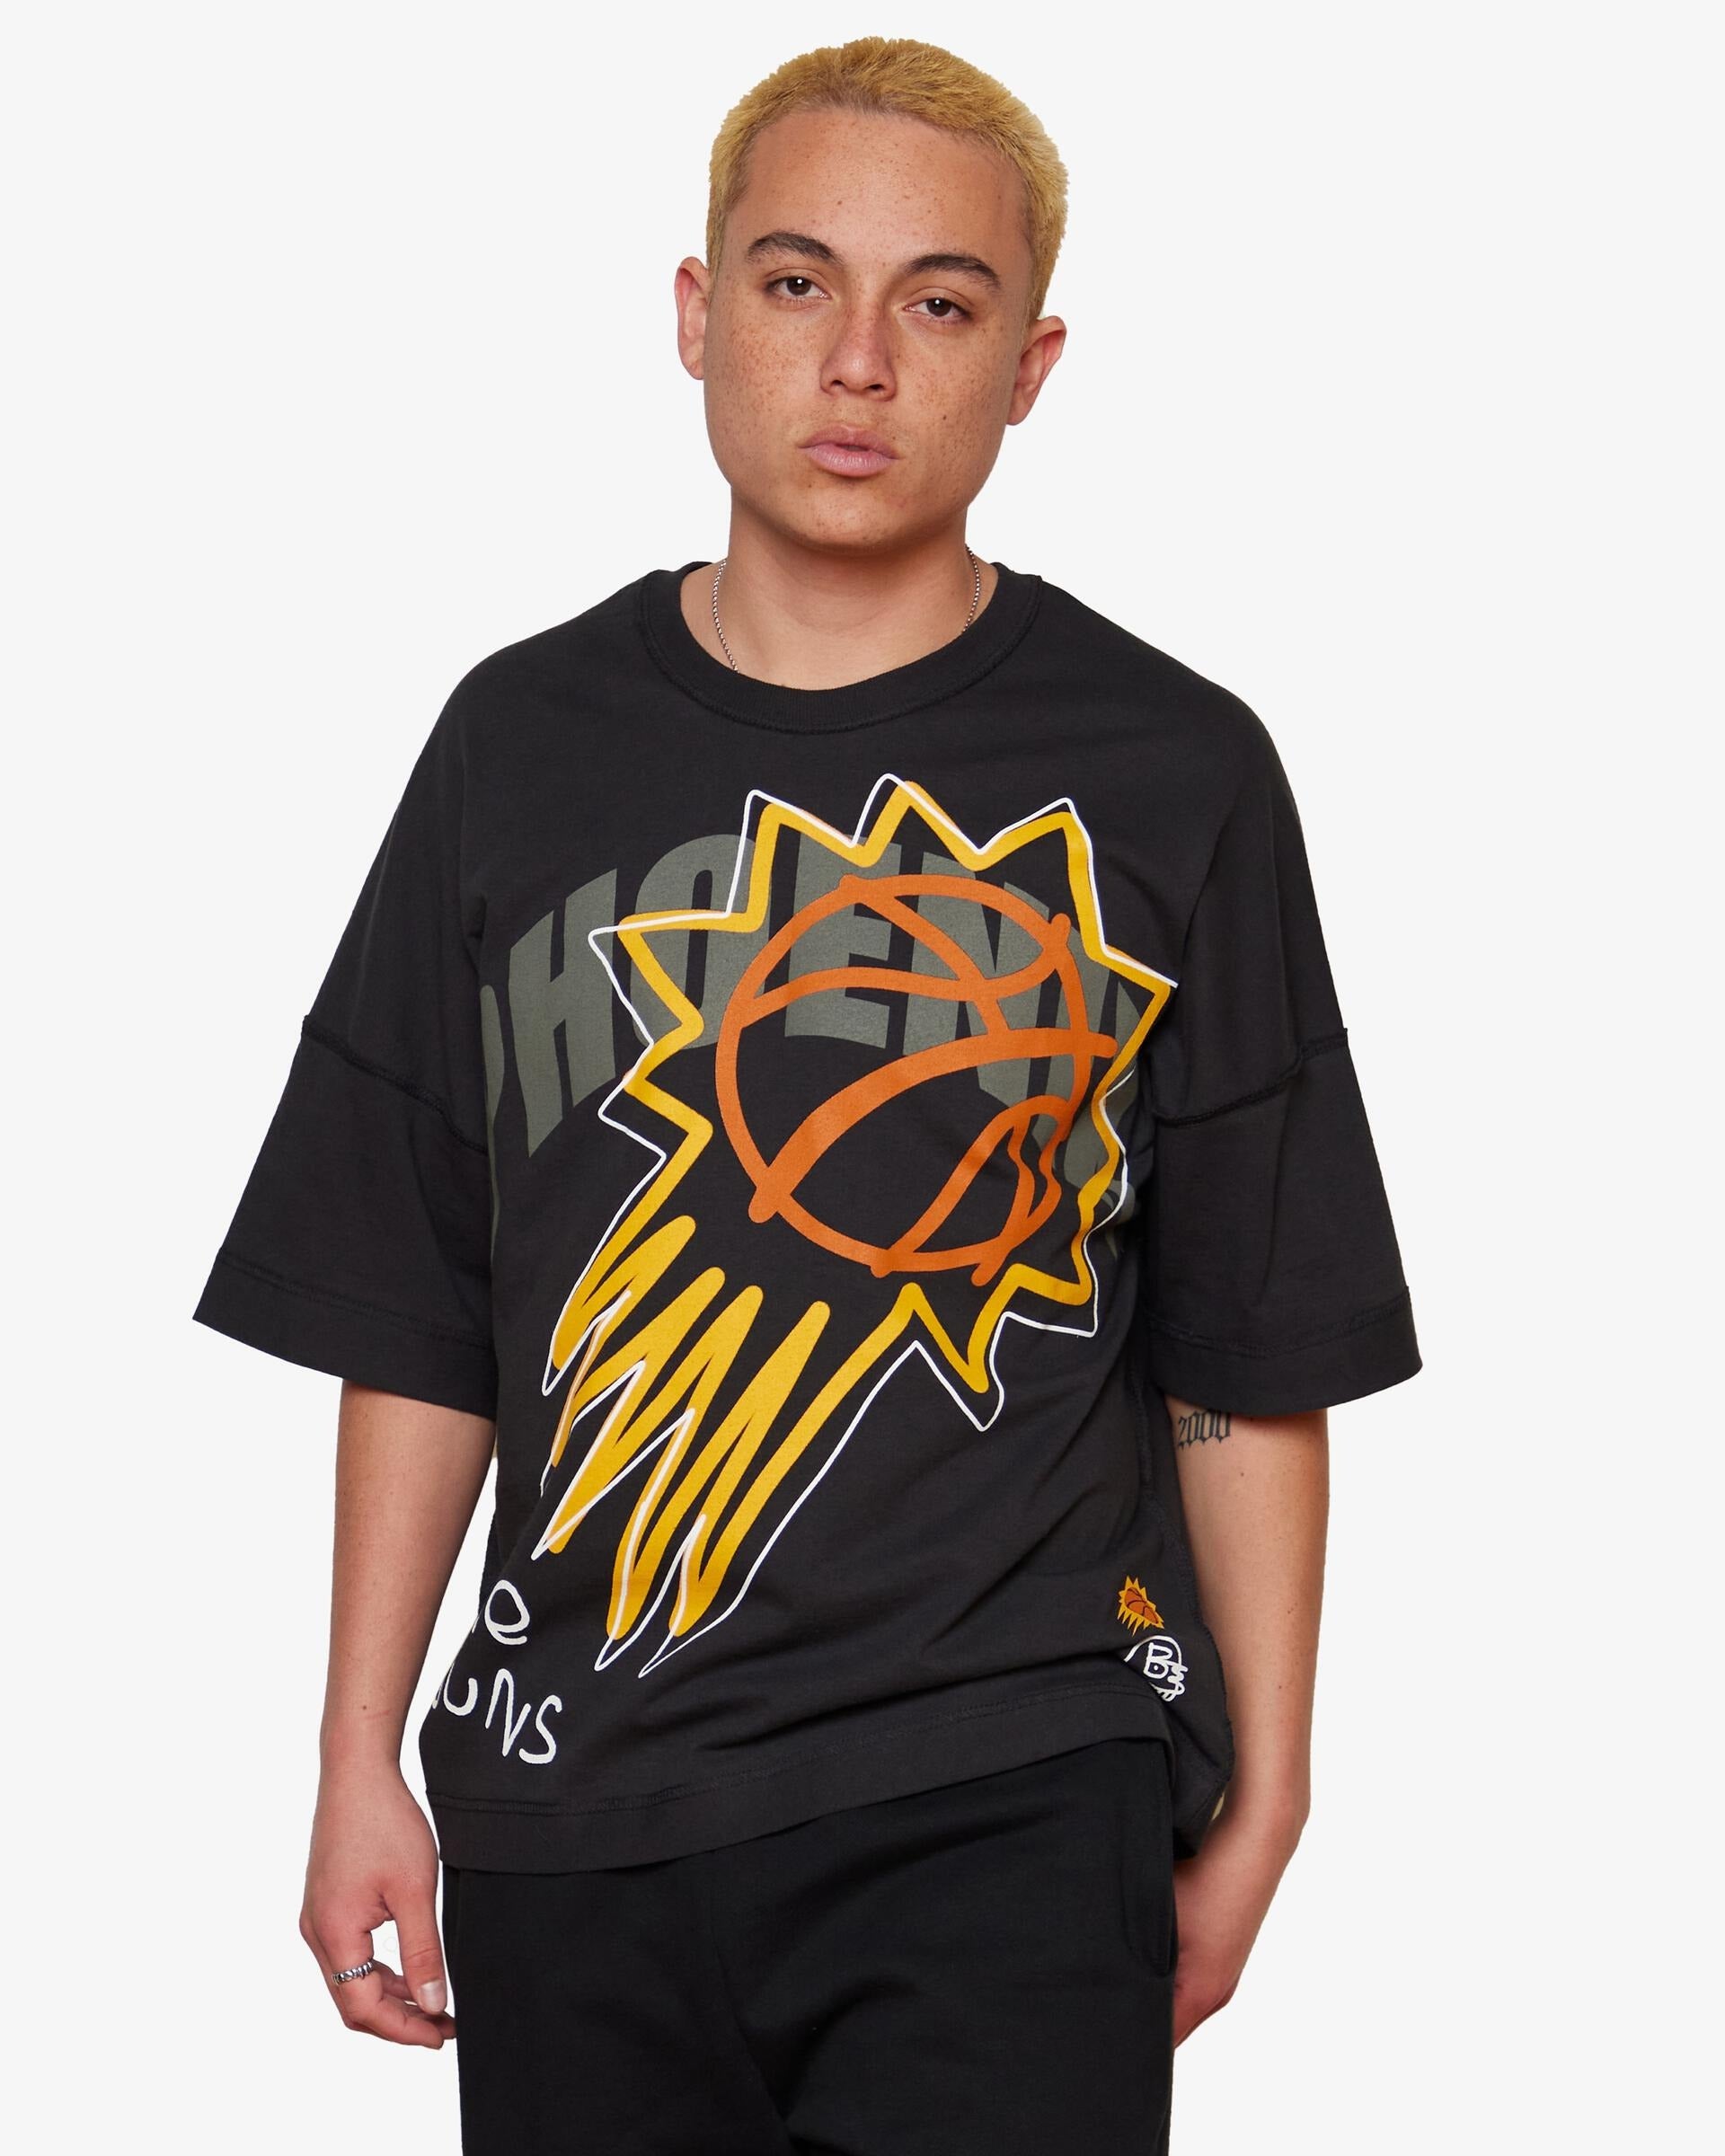 B2SS Tee Shirt - Phoenix Suns